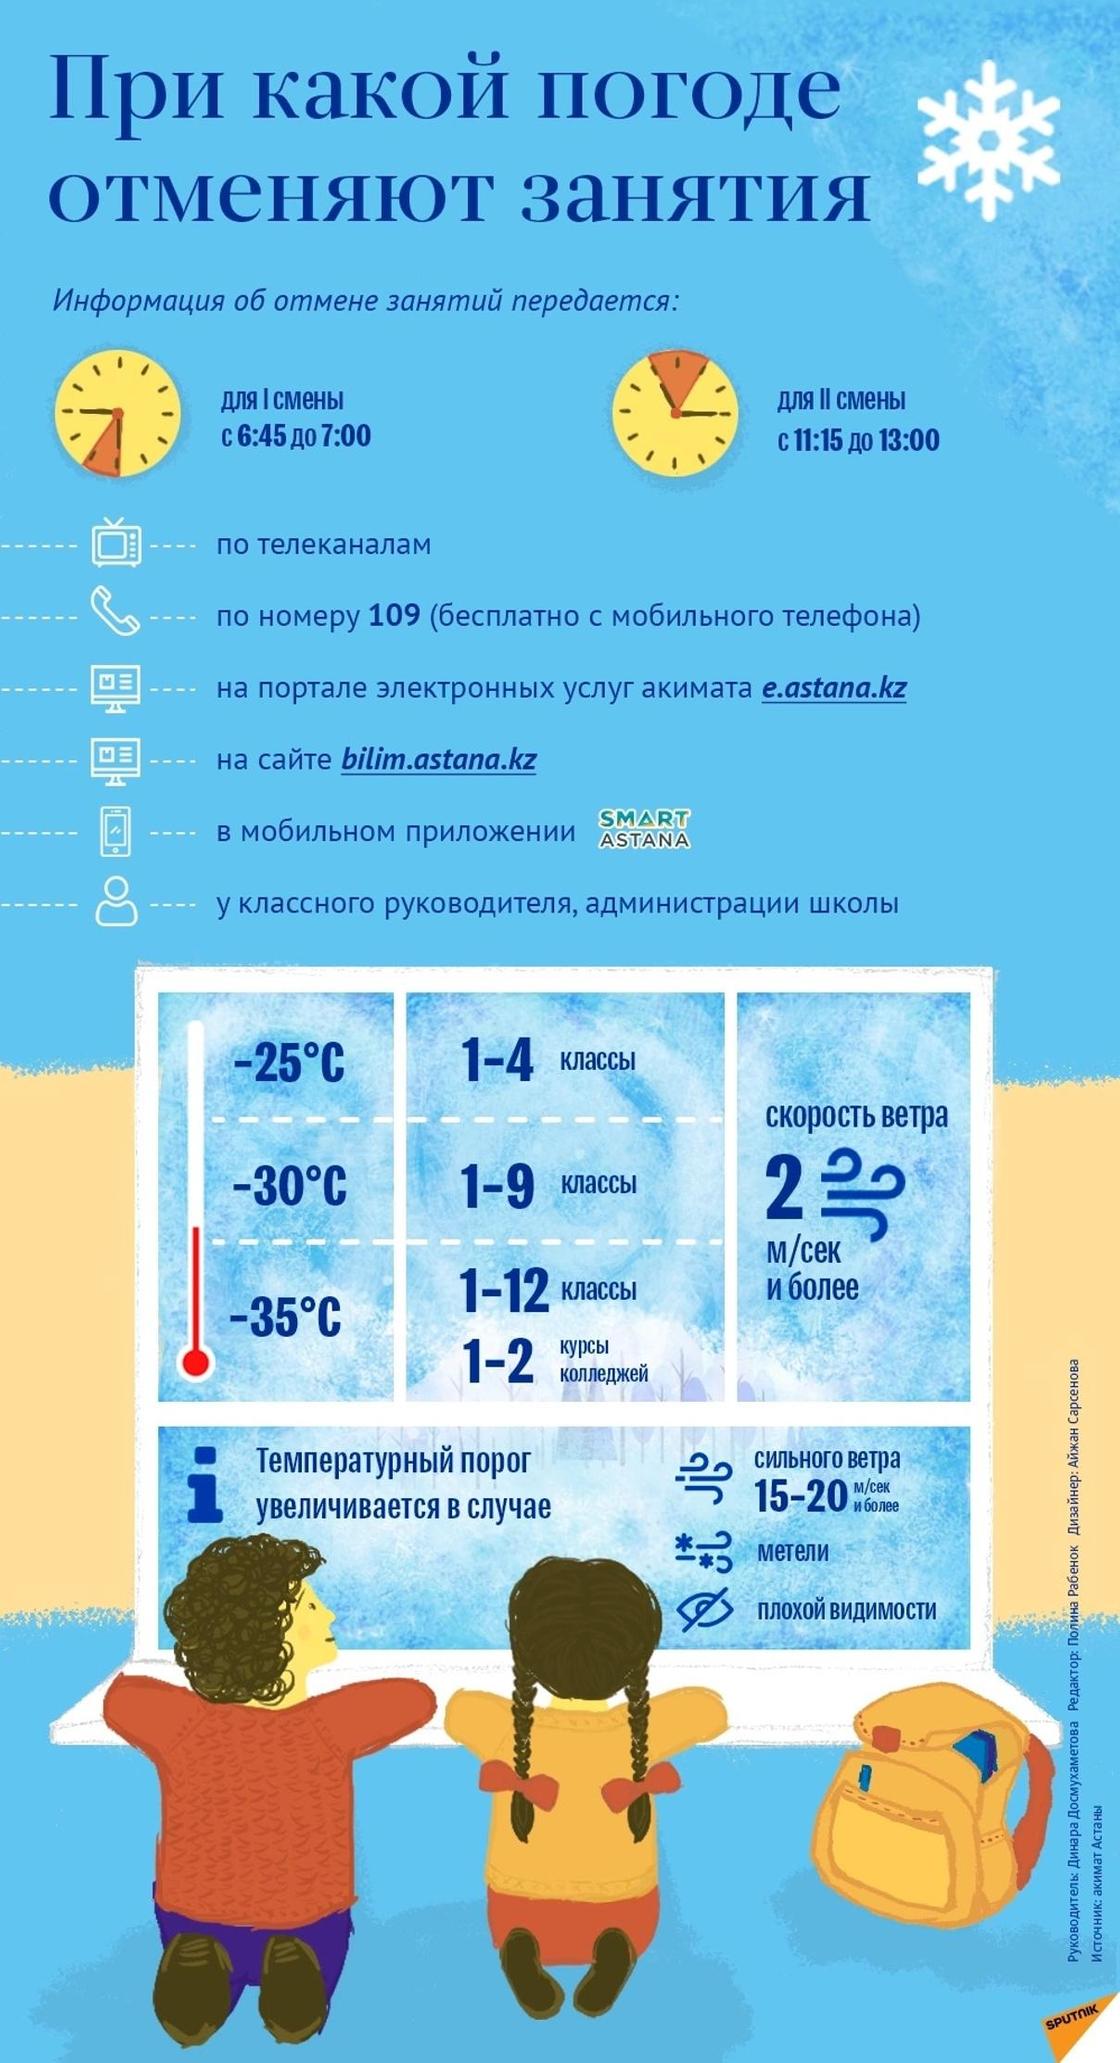 При каких условиях отменяют занятия в Казахстане